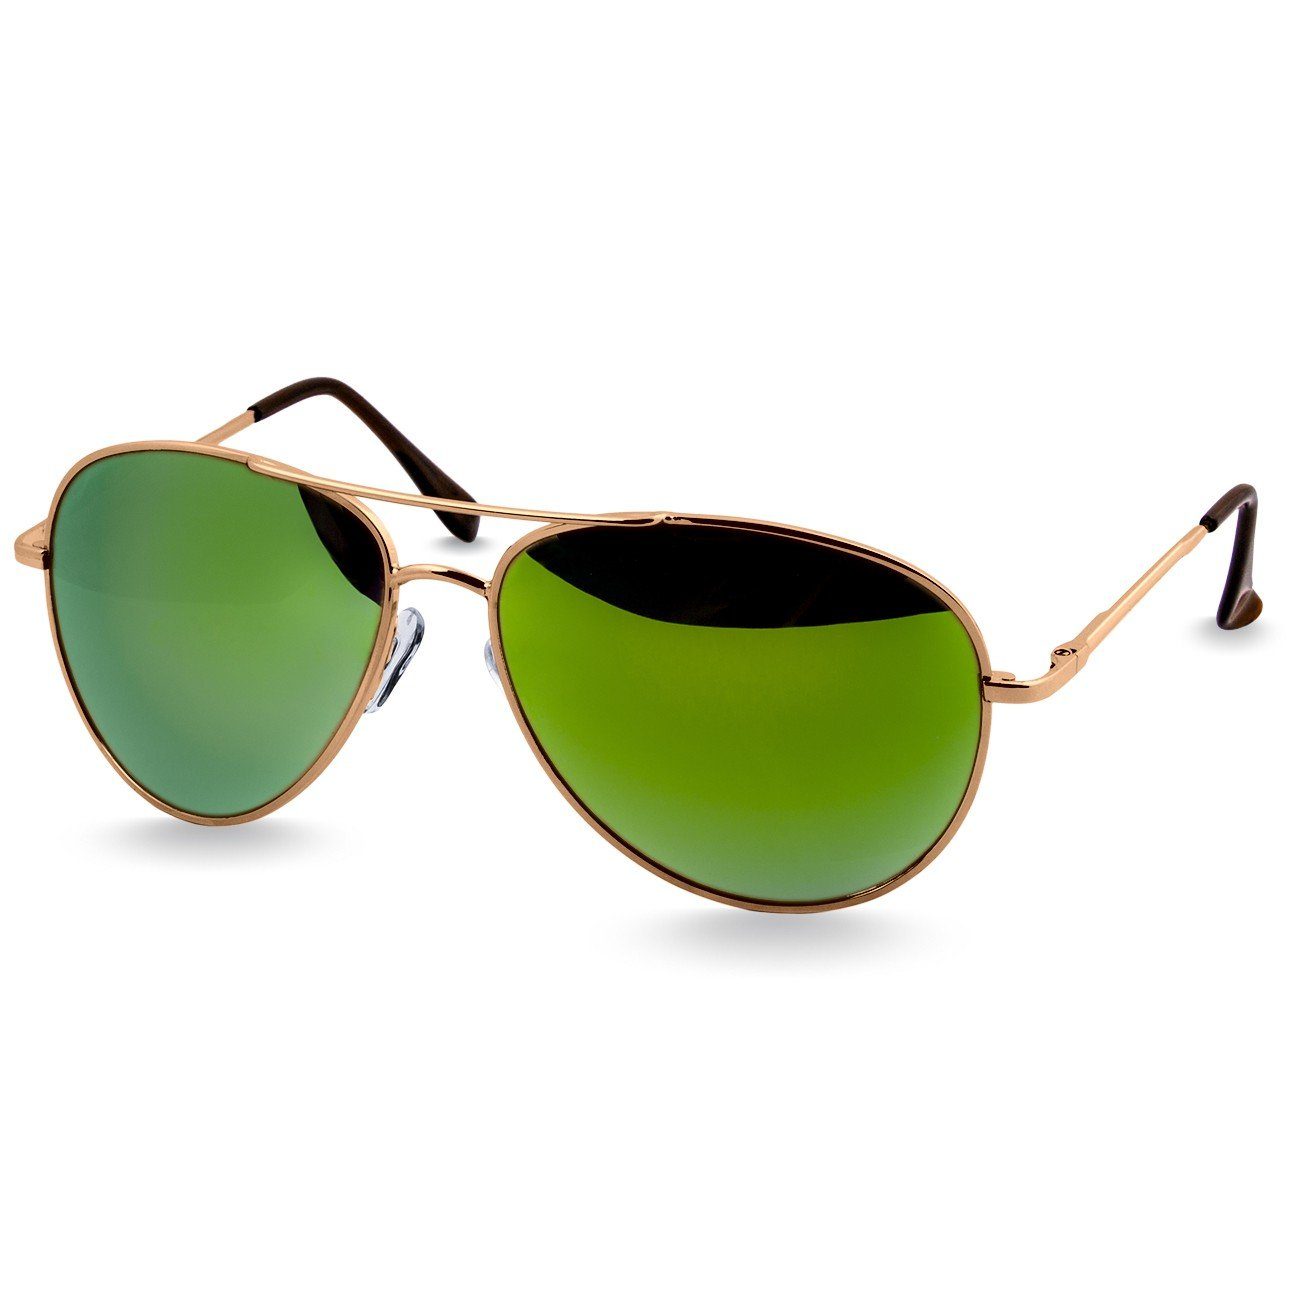 Caspar Sonnenbrille SG013 klassische Unisex Retro Pilotenbrille gold / grün verspiegelt